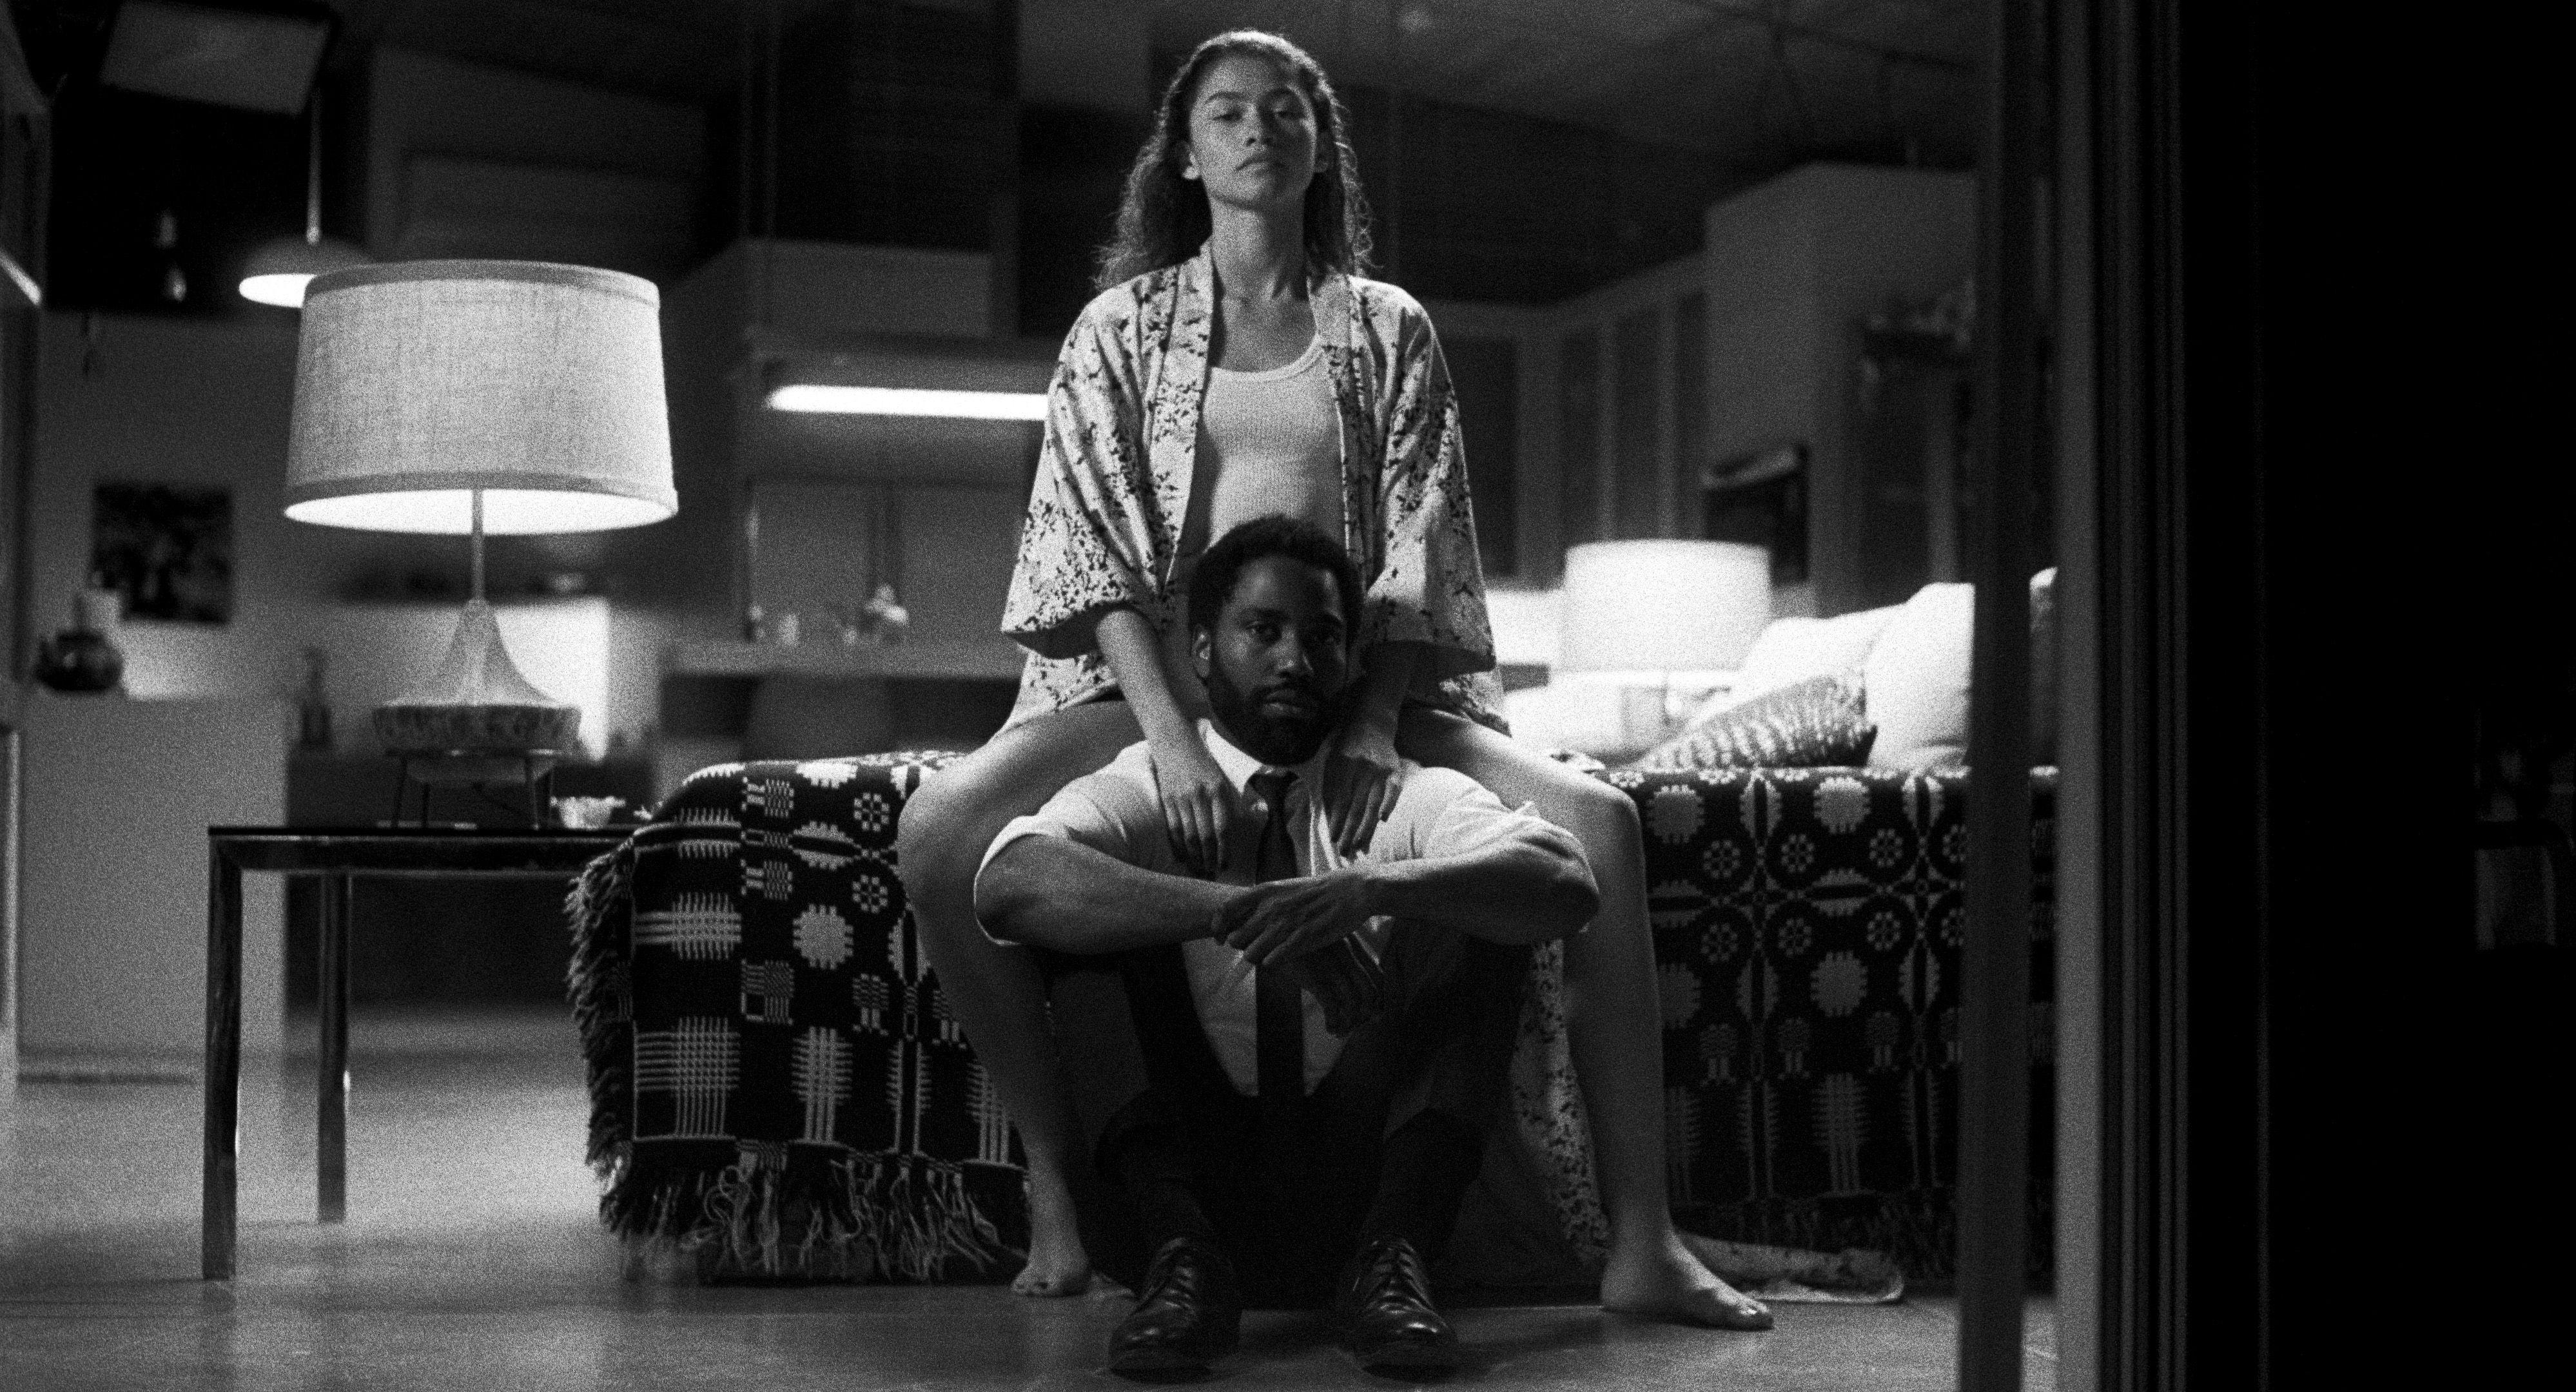 La nueva película de Zendaya "Malcolm & Marie" tiene fecha de estreno oficial en Netflix